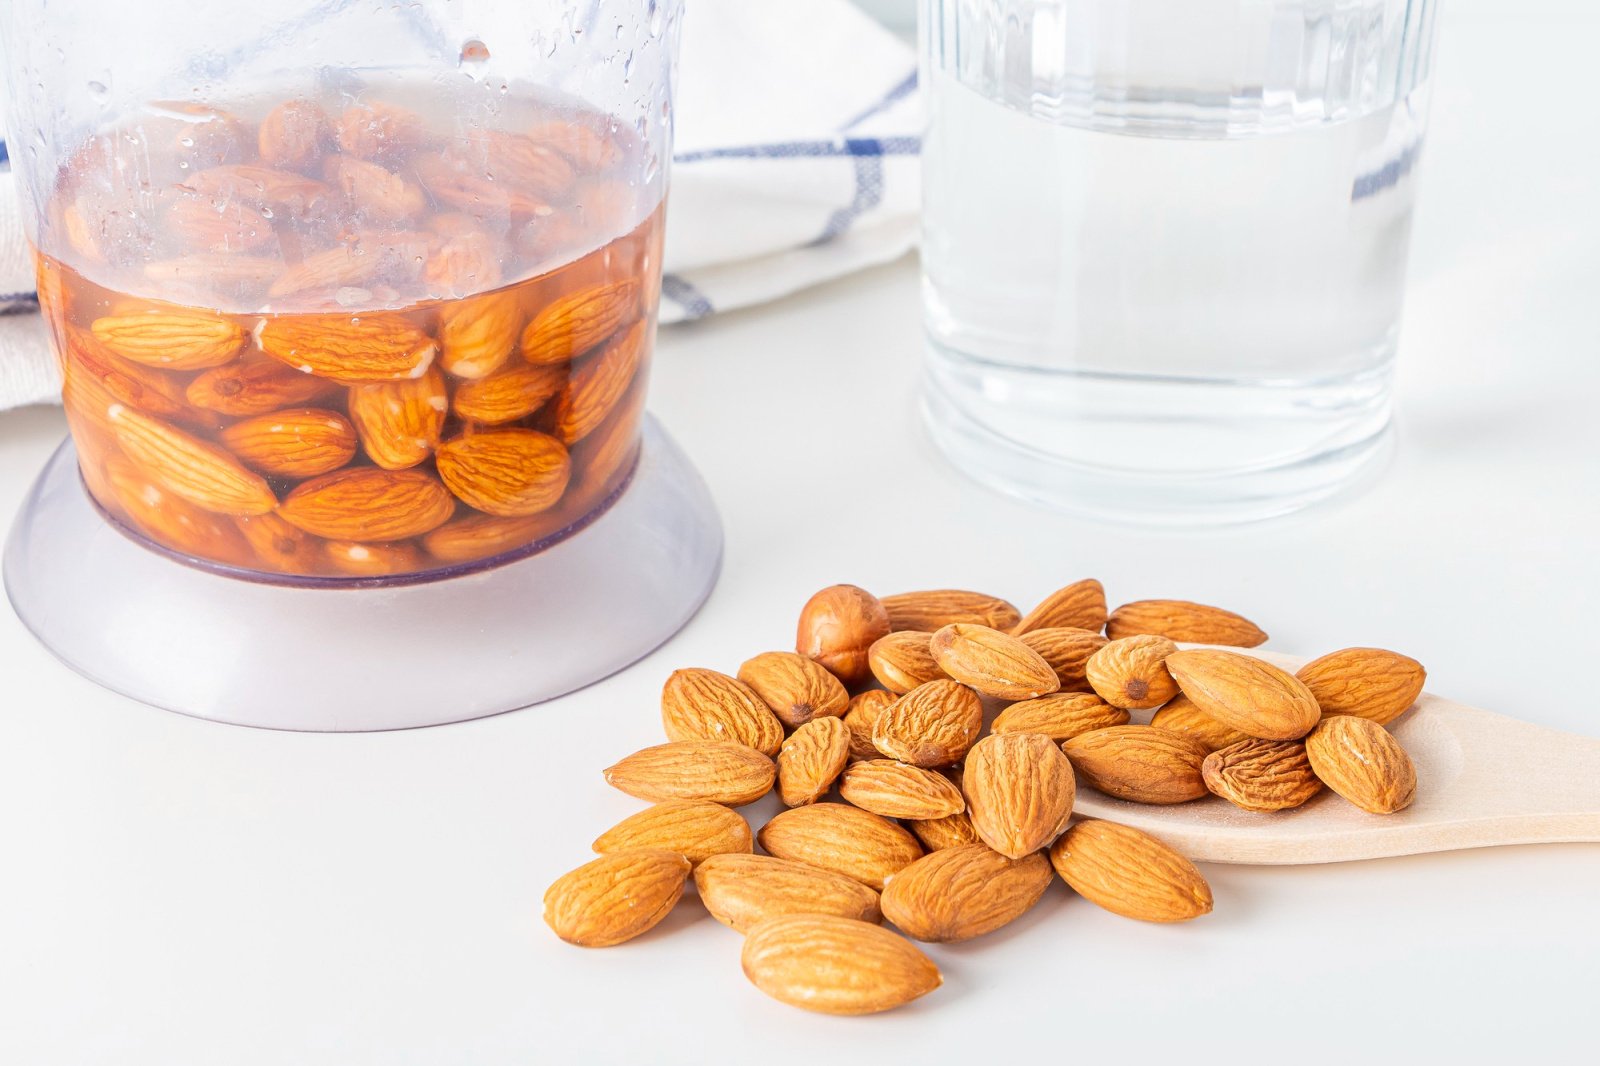 Действительно ли нужно замачивать орехи перед едой?